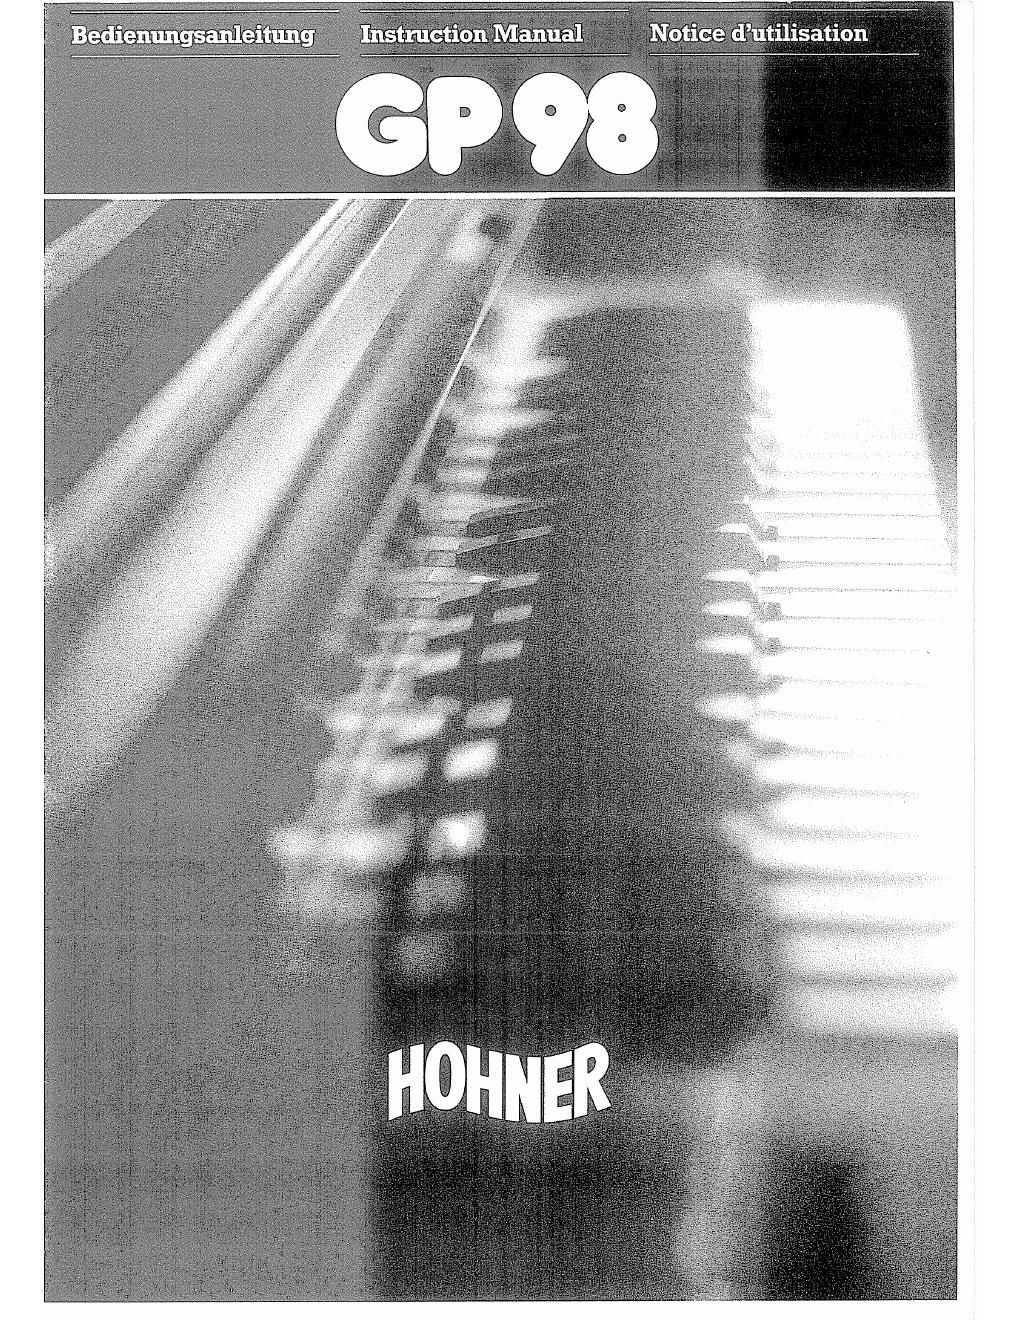 hohner gp 98 owner manual